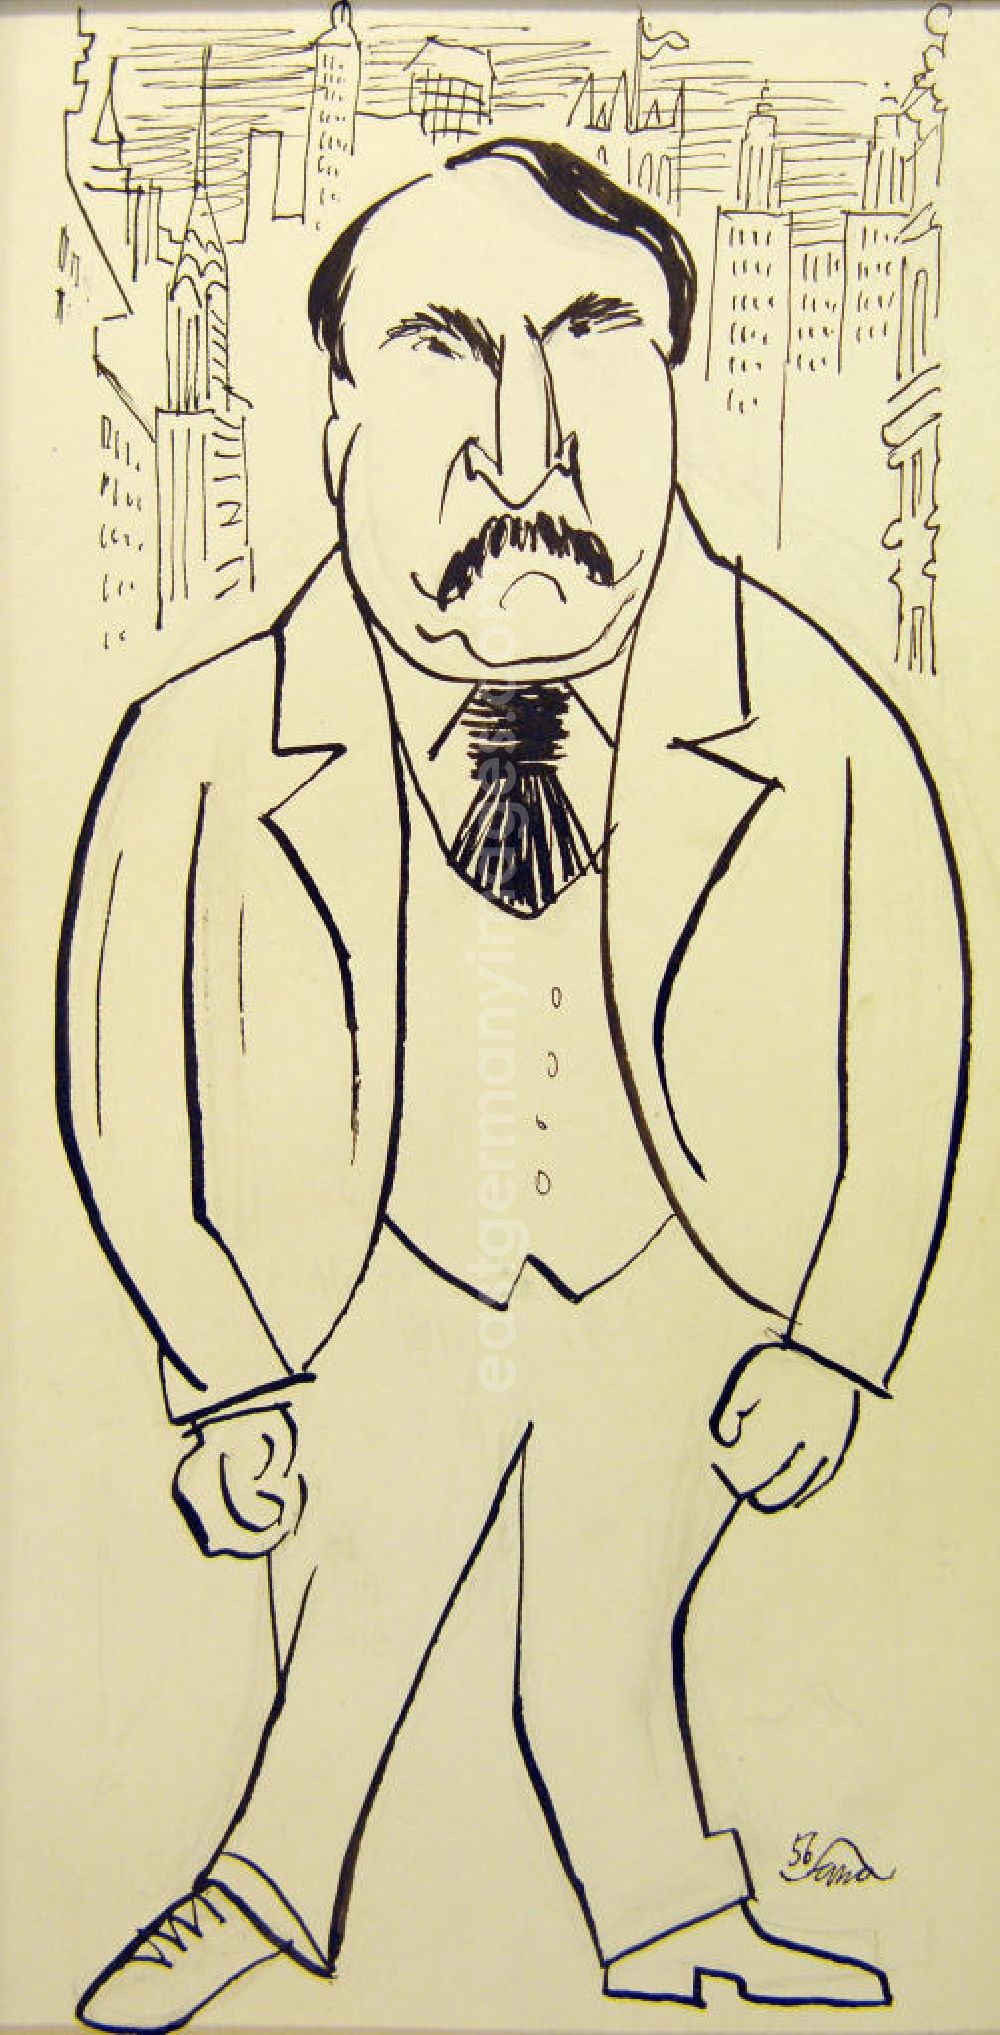 GDR image archive: Berlin - Zeichnung von Herbert Sandberg über den deutschen Schriftsteller und Stückeschreiber Ulrich Becher (*02.01.1910 †15.04.199